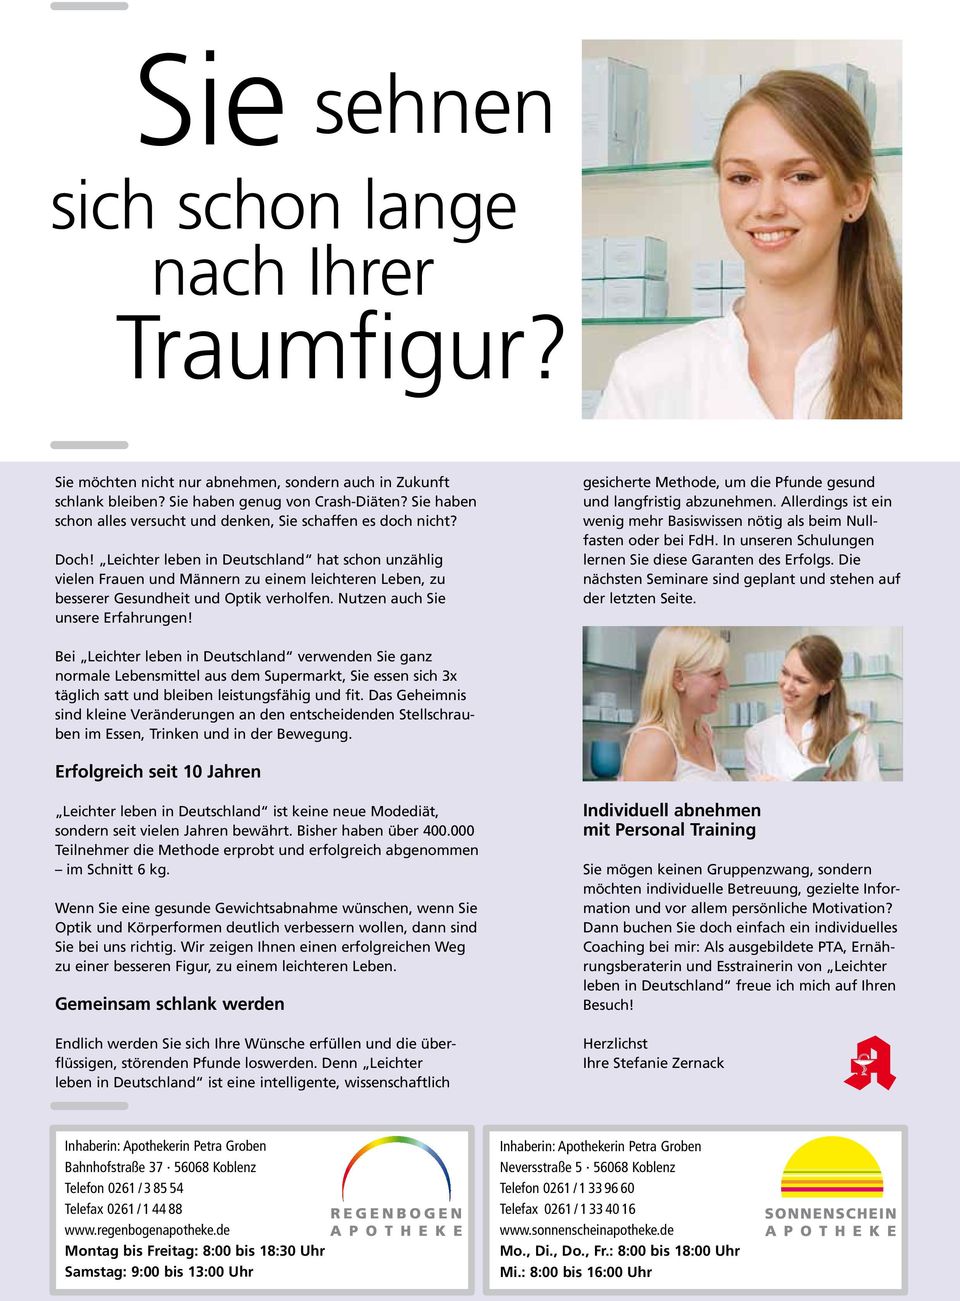 Leichter leben in Deutschland hat schon unzählig vielen Frauen und Männern zu einem leichteren Leben, zu besserer Gesundheit und Optik verholfen. Nutzen auch Sie unsere Erfahrungen!